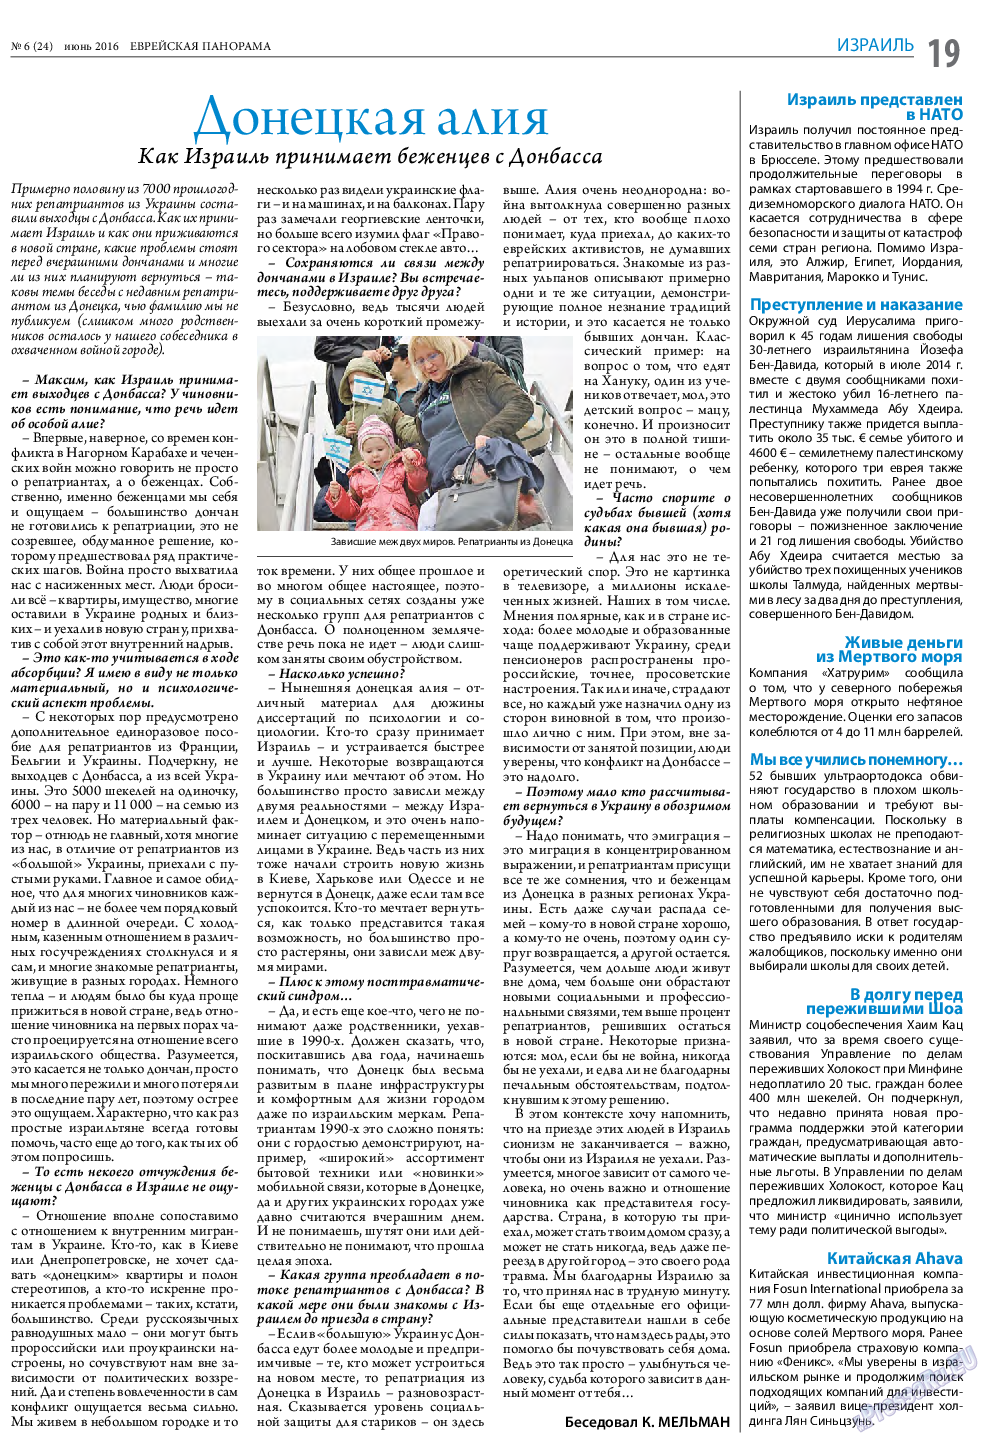 Еврейская панорама (газета). 2016 год, номер 6, стр. 19